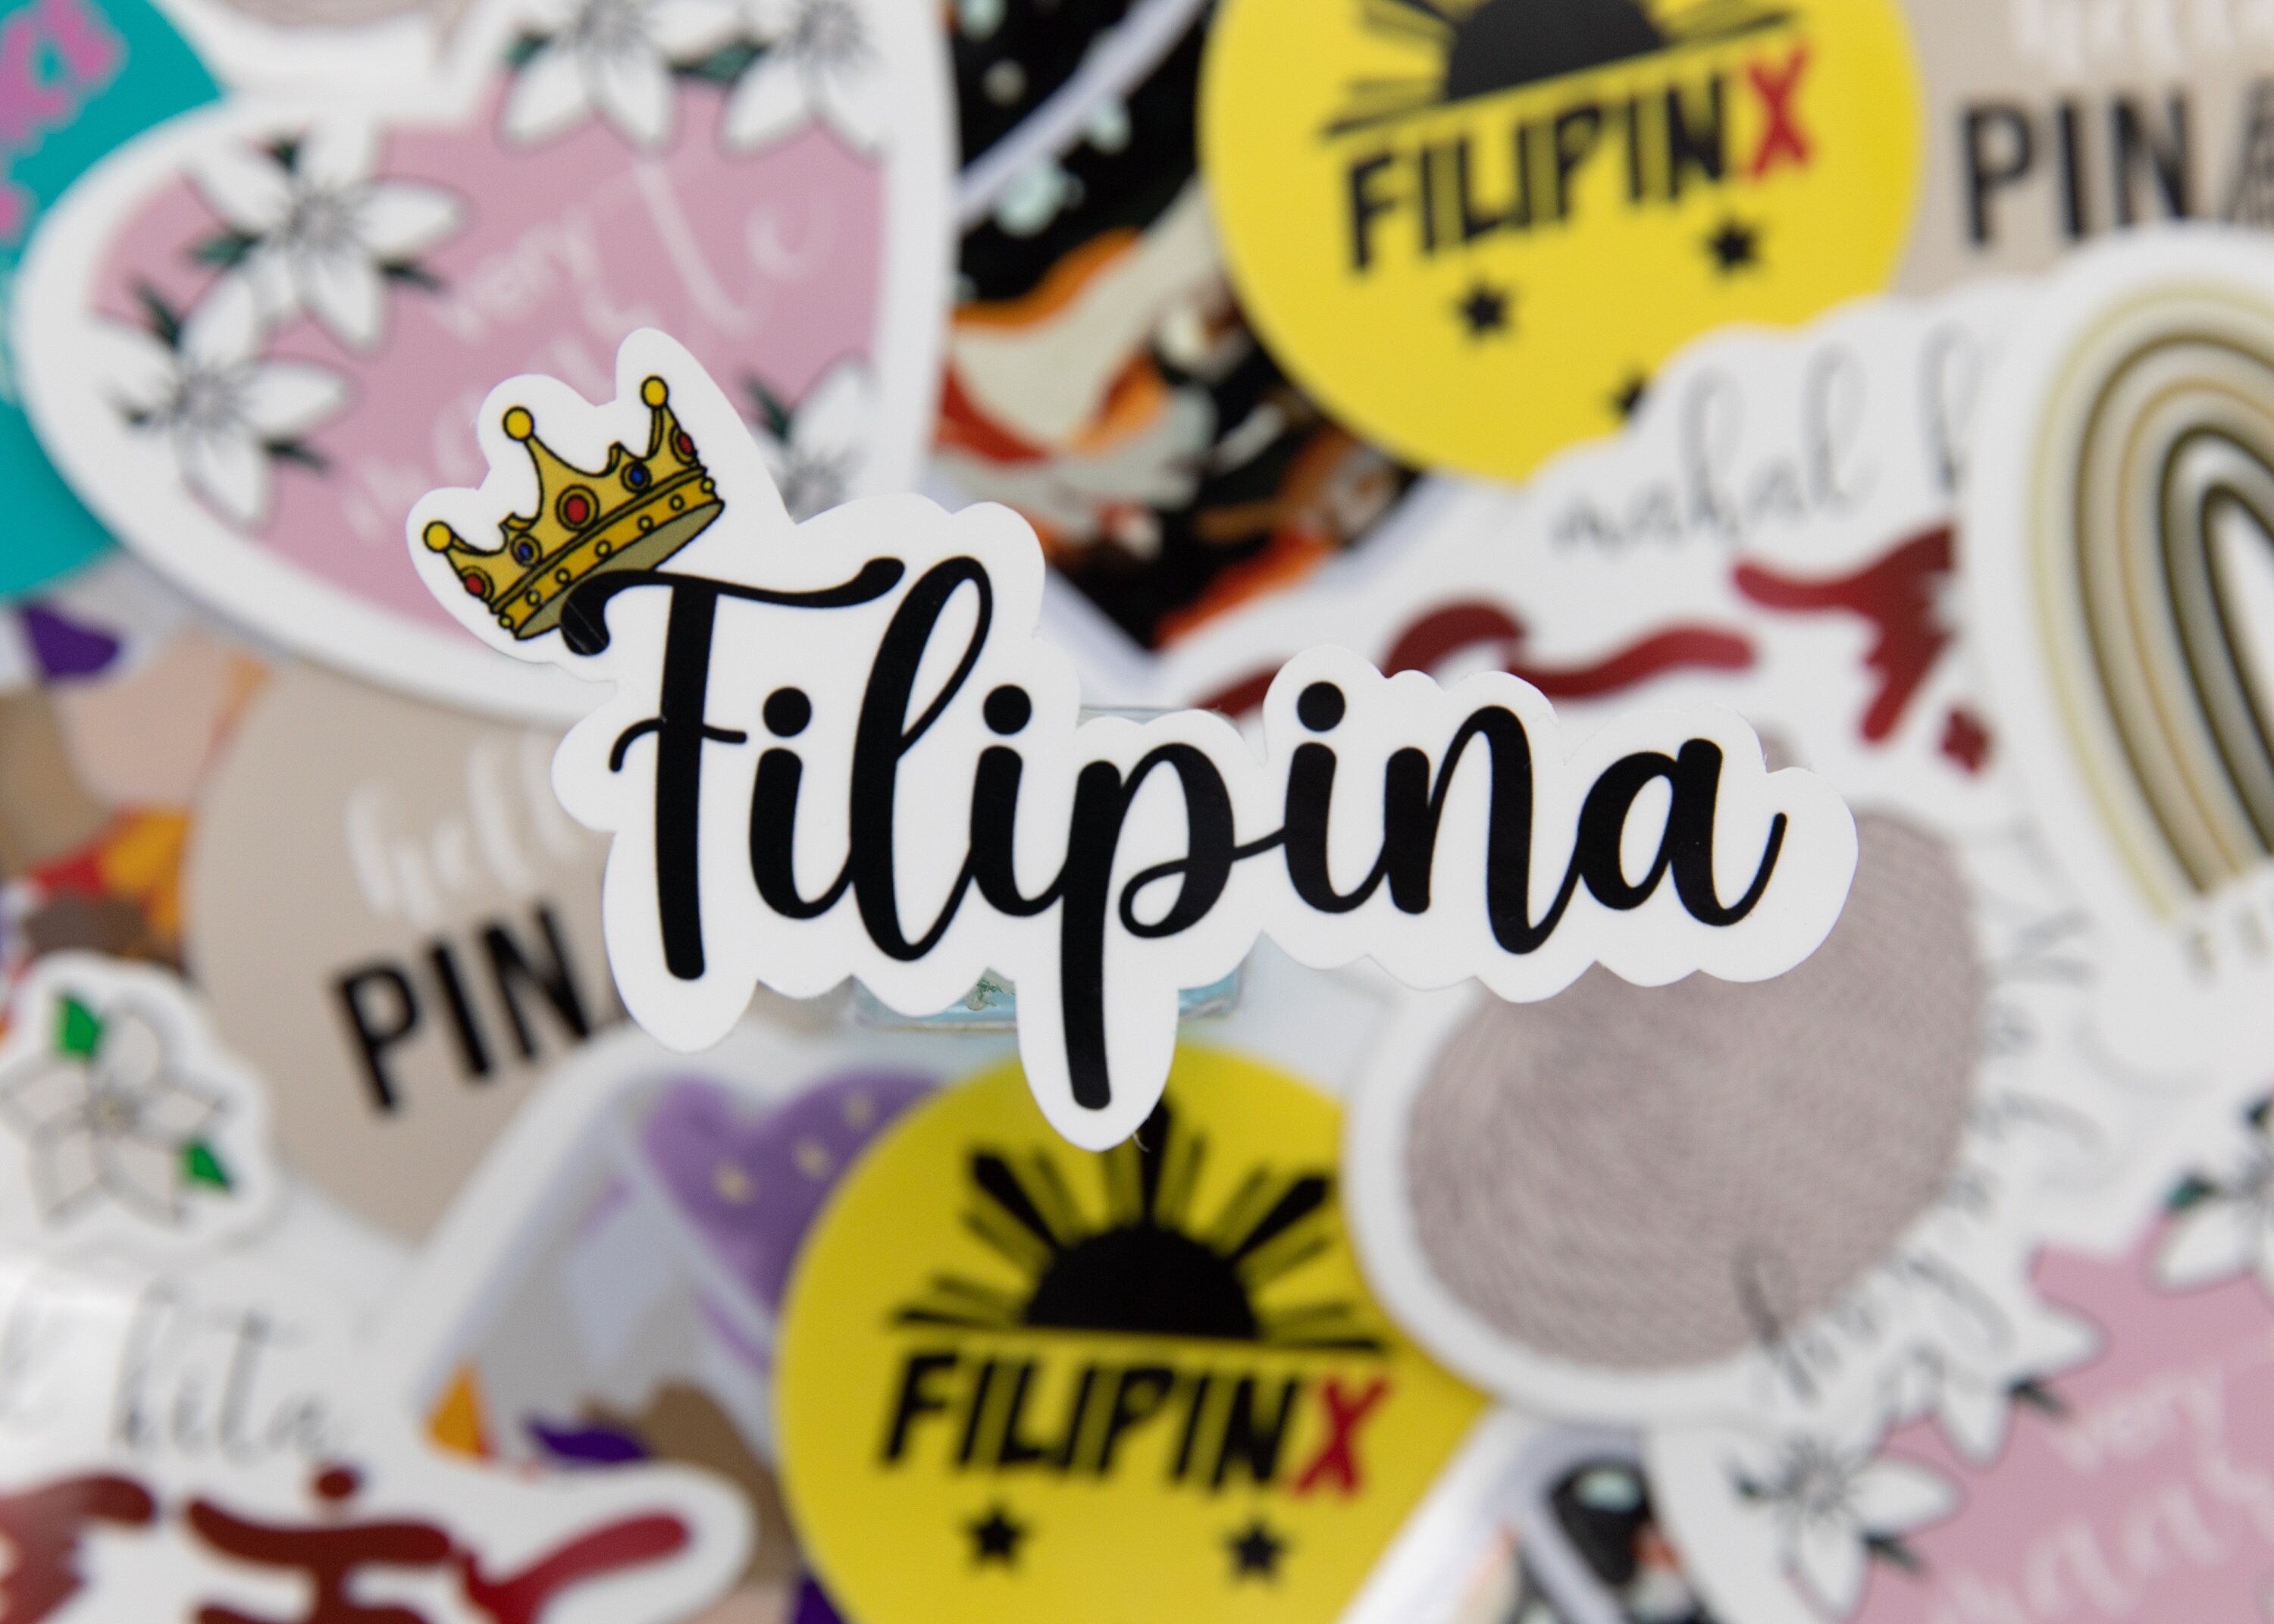 Mie Makes Filipina Sticker, Filipina Queen Sticker, Filipino Queen, Filipino Crown Sticker, Philippines, Laptop Sticker, Waterbottle Sticker, Decal